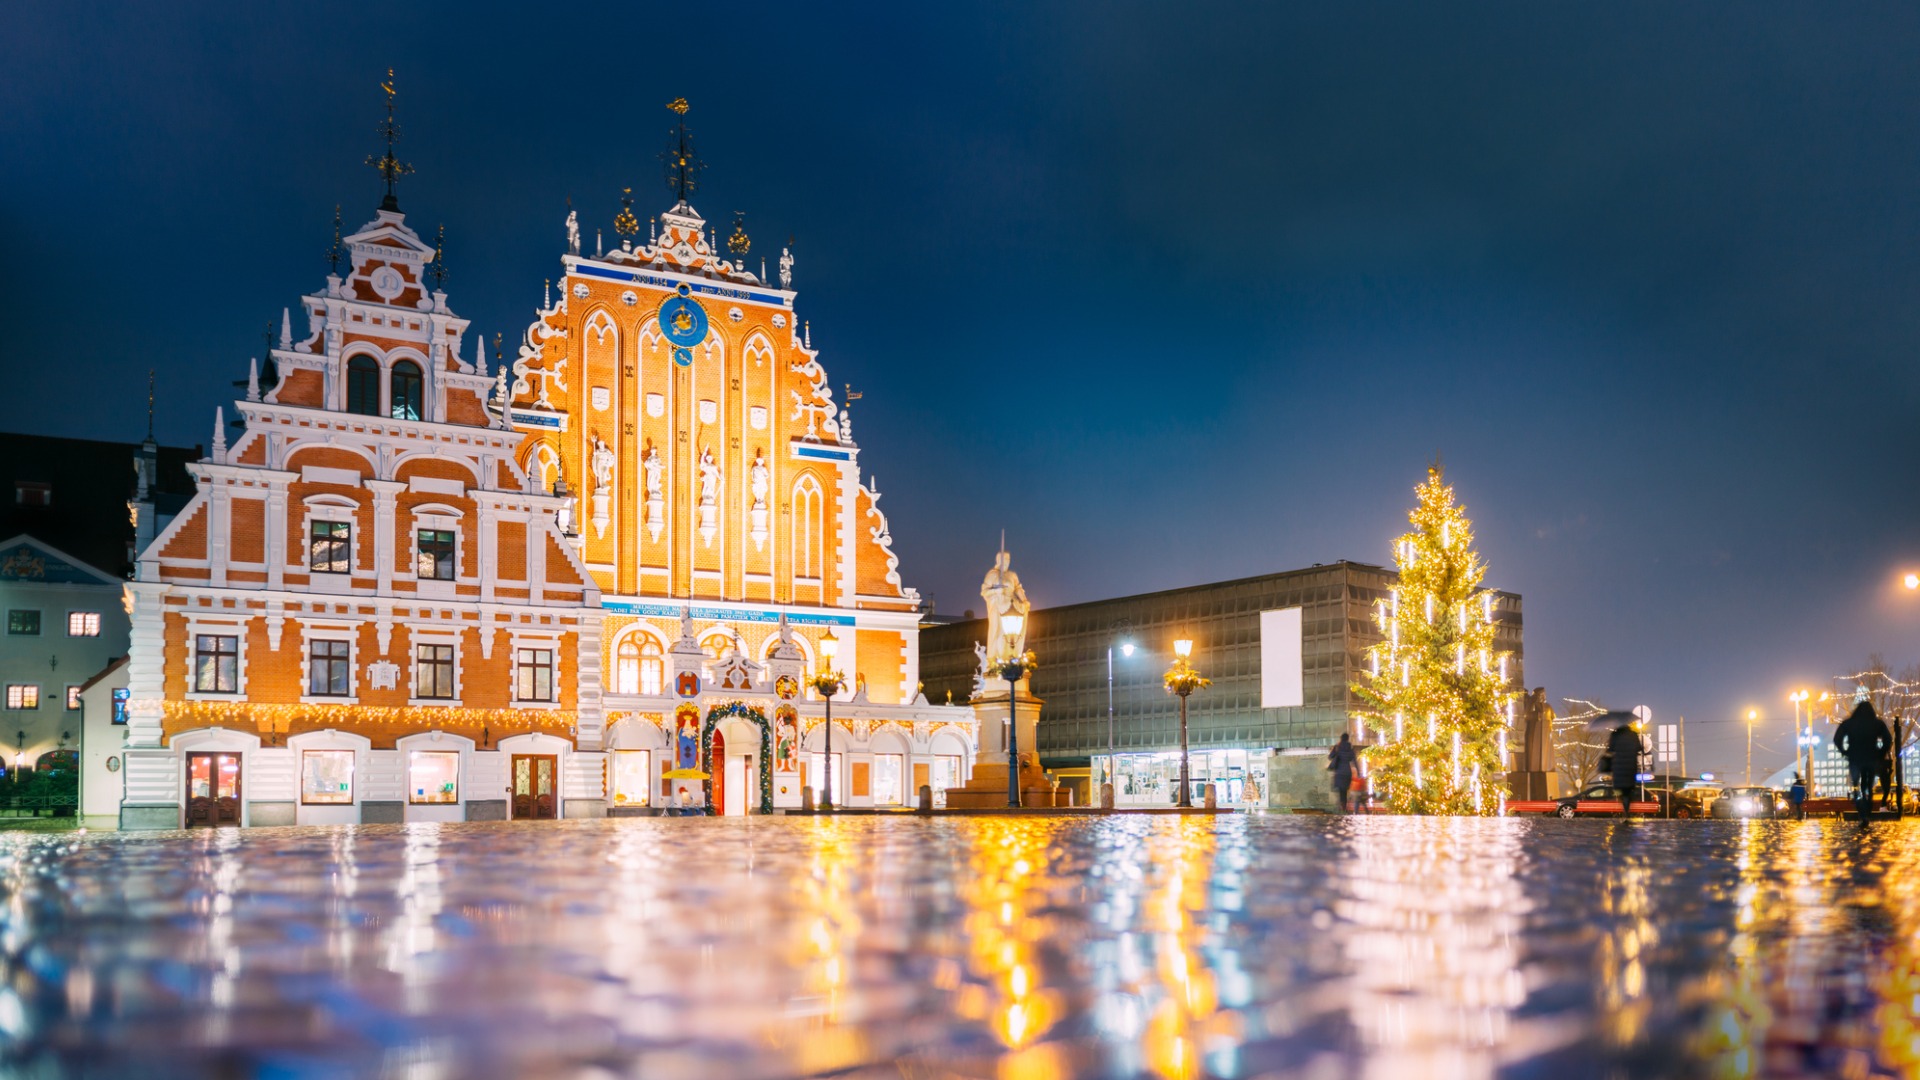 Această imagine prezintă fațada a două clădiri frumoase din Riga. Există, de asemenea, un pom de Crăciun și oameni care se plimbă. 